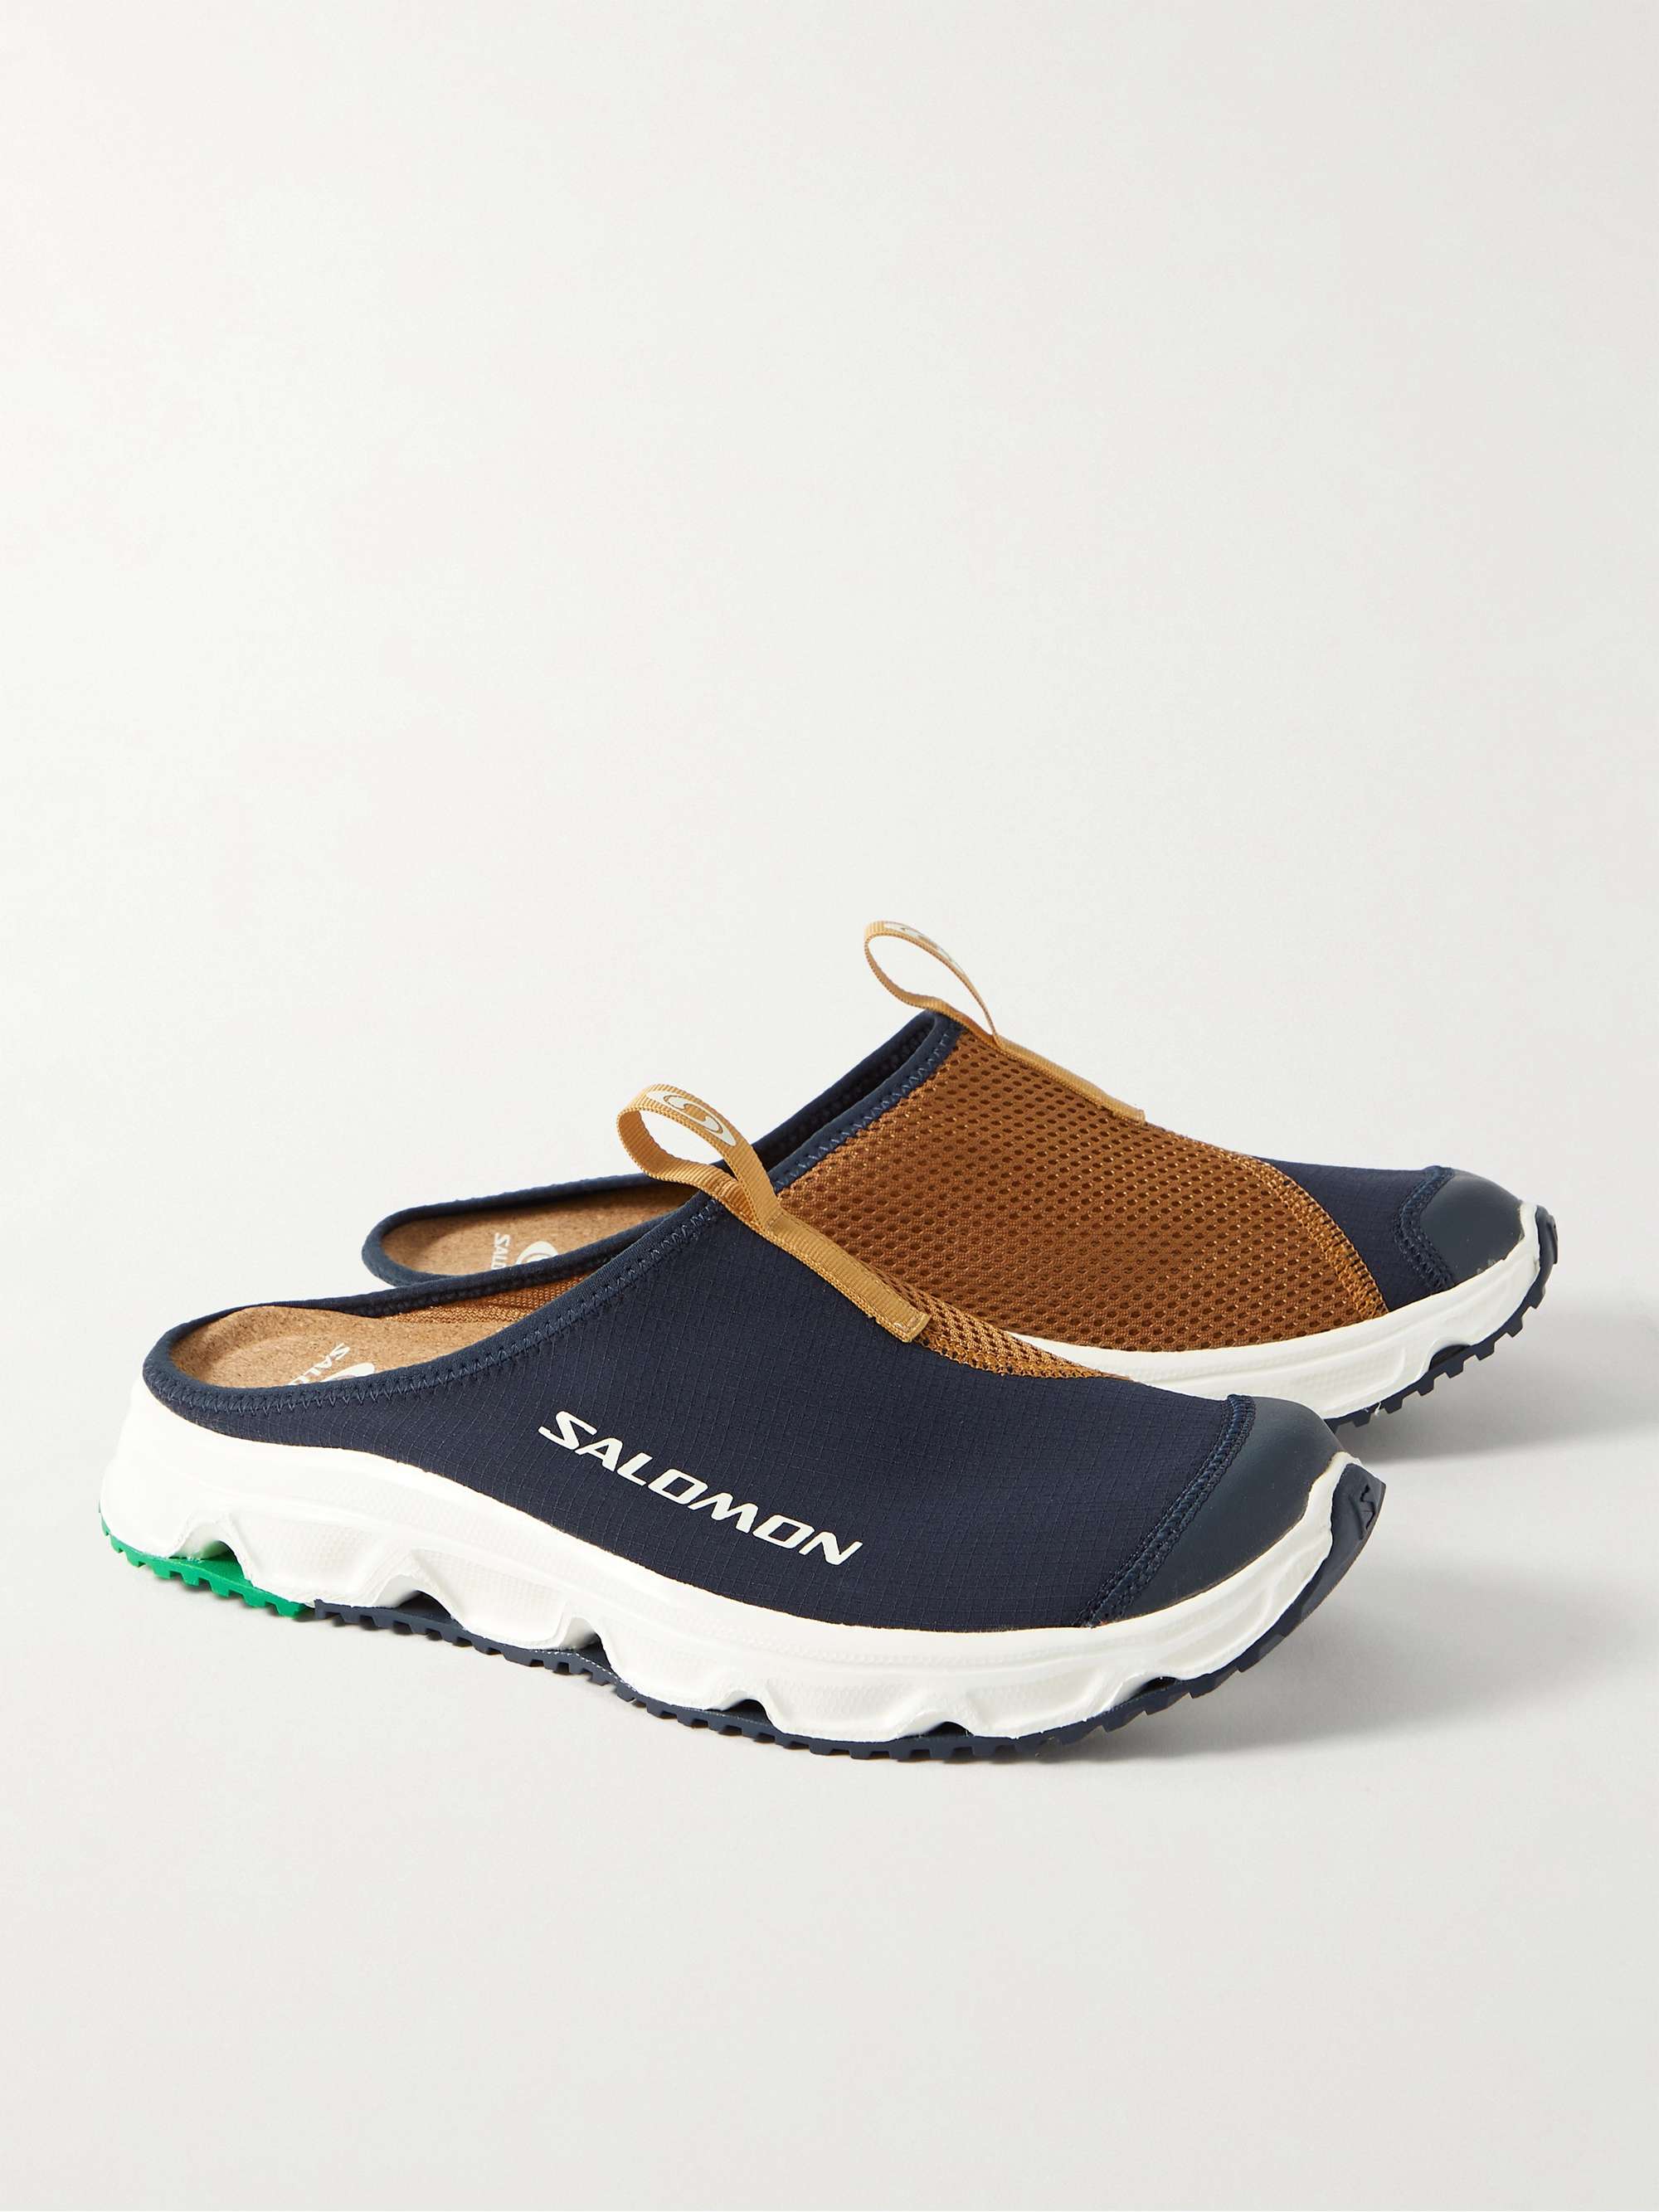 SALOMON RX Slide 3.0 Ripstop and Mesh Slip-On Sneakers for Men | MR PORTER